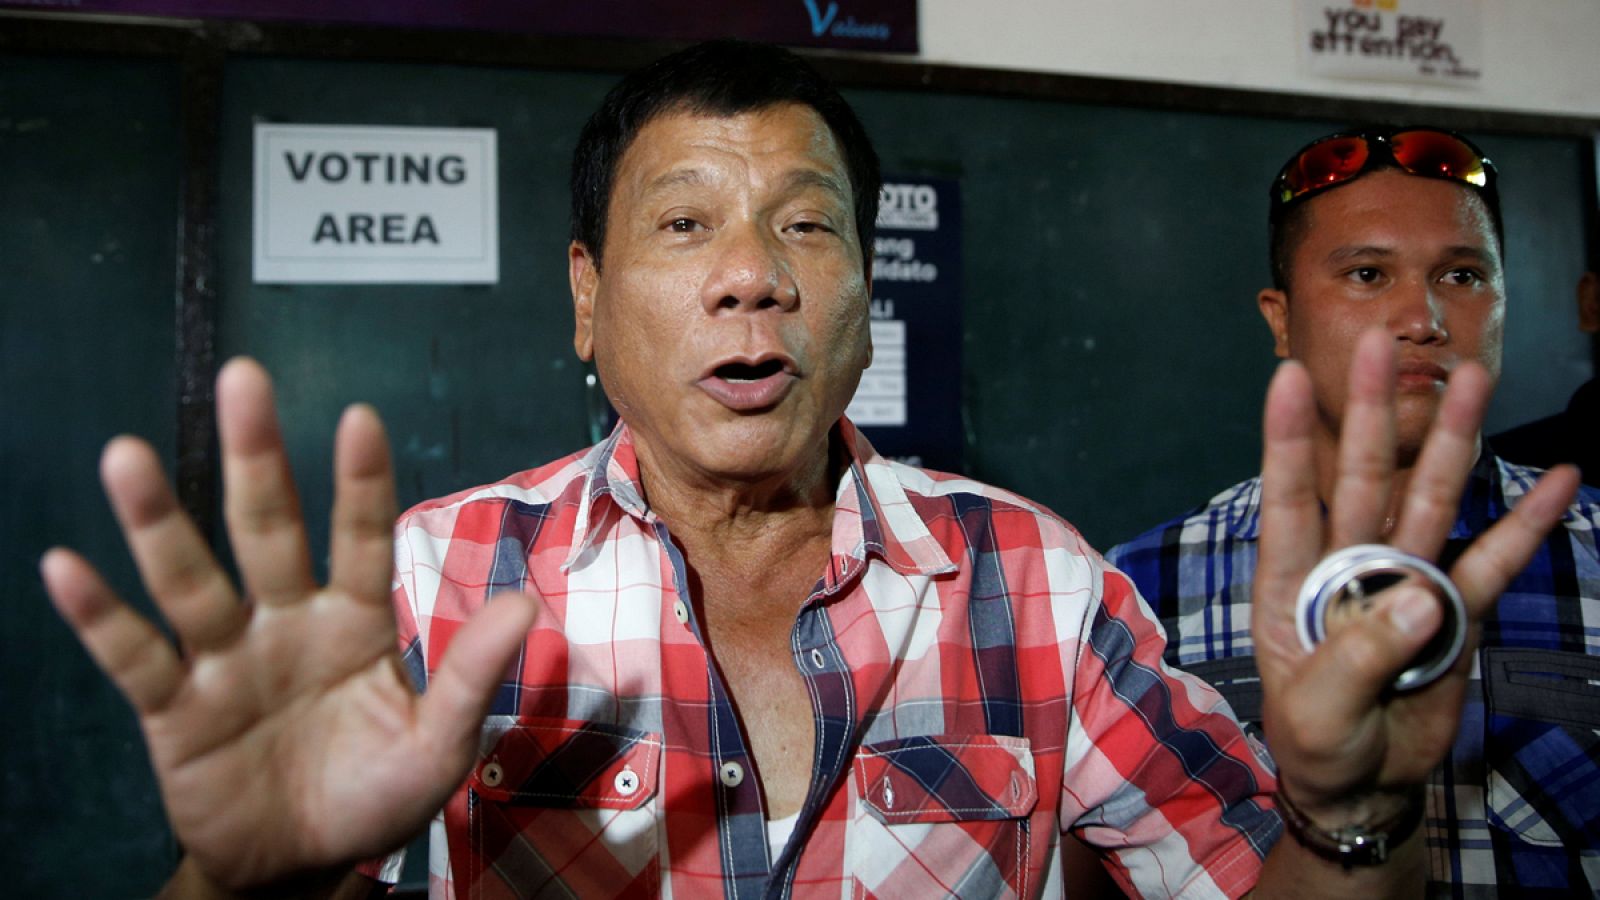 El candidato presidencial Rodrigo Duterte poco después de depositar su voto en Davao, al sur de Filipinas.